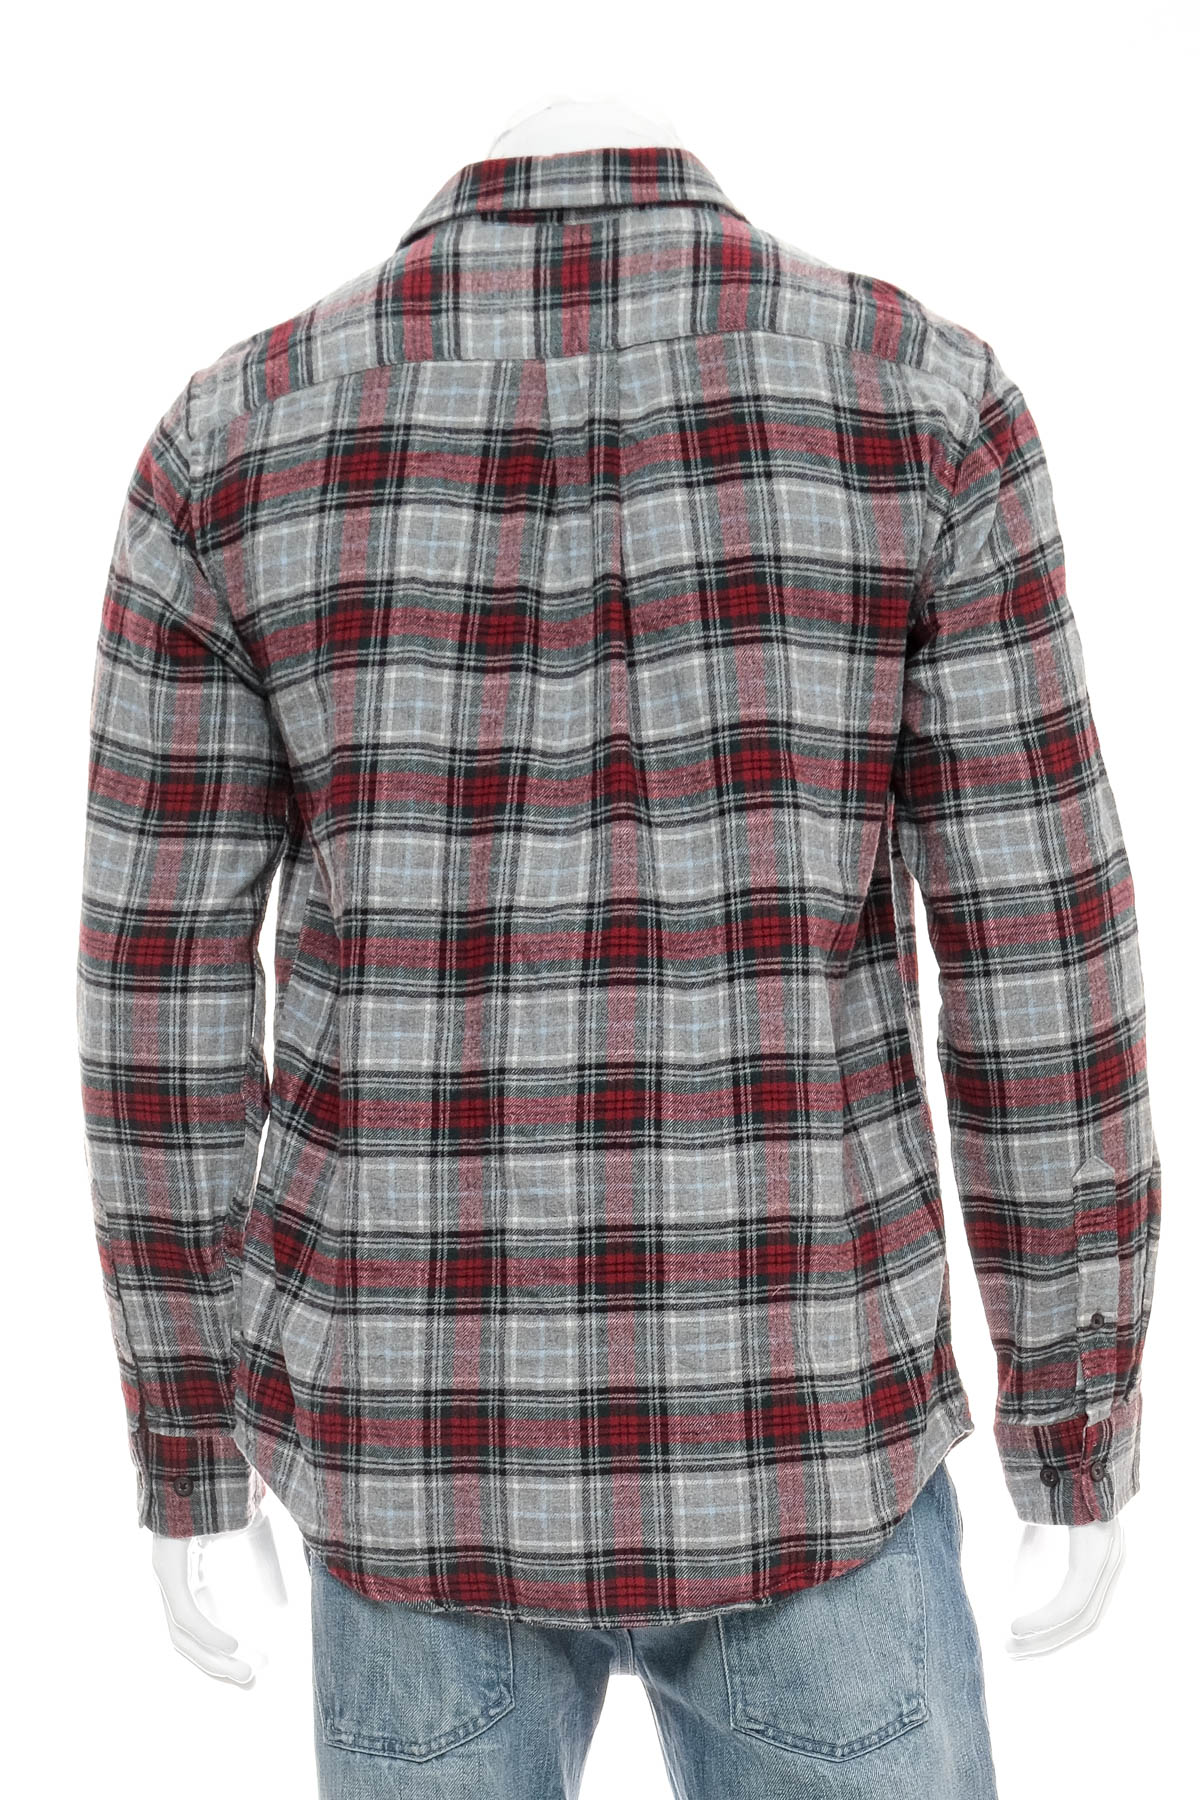 Ανδρικό πουκάμισο - Croft & Barrow - 1